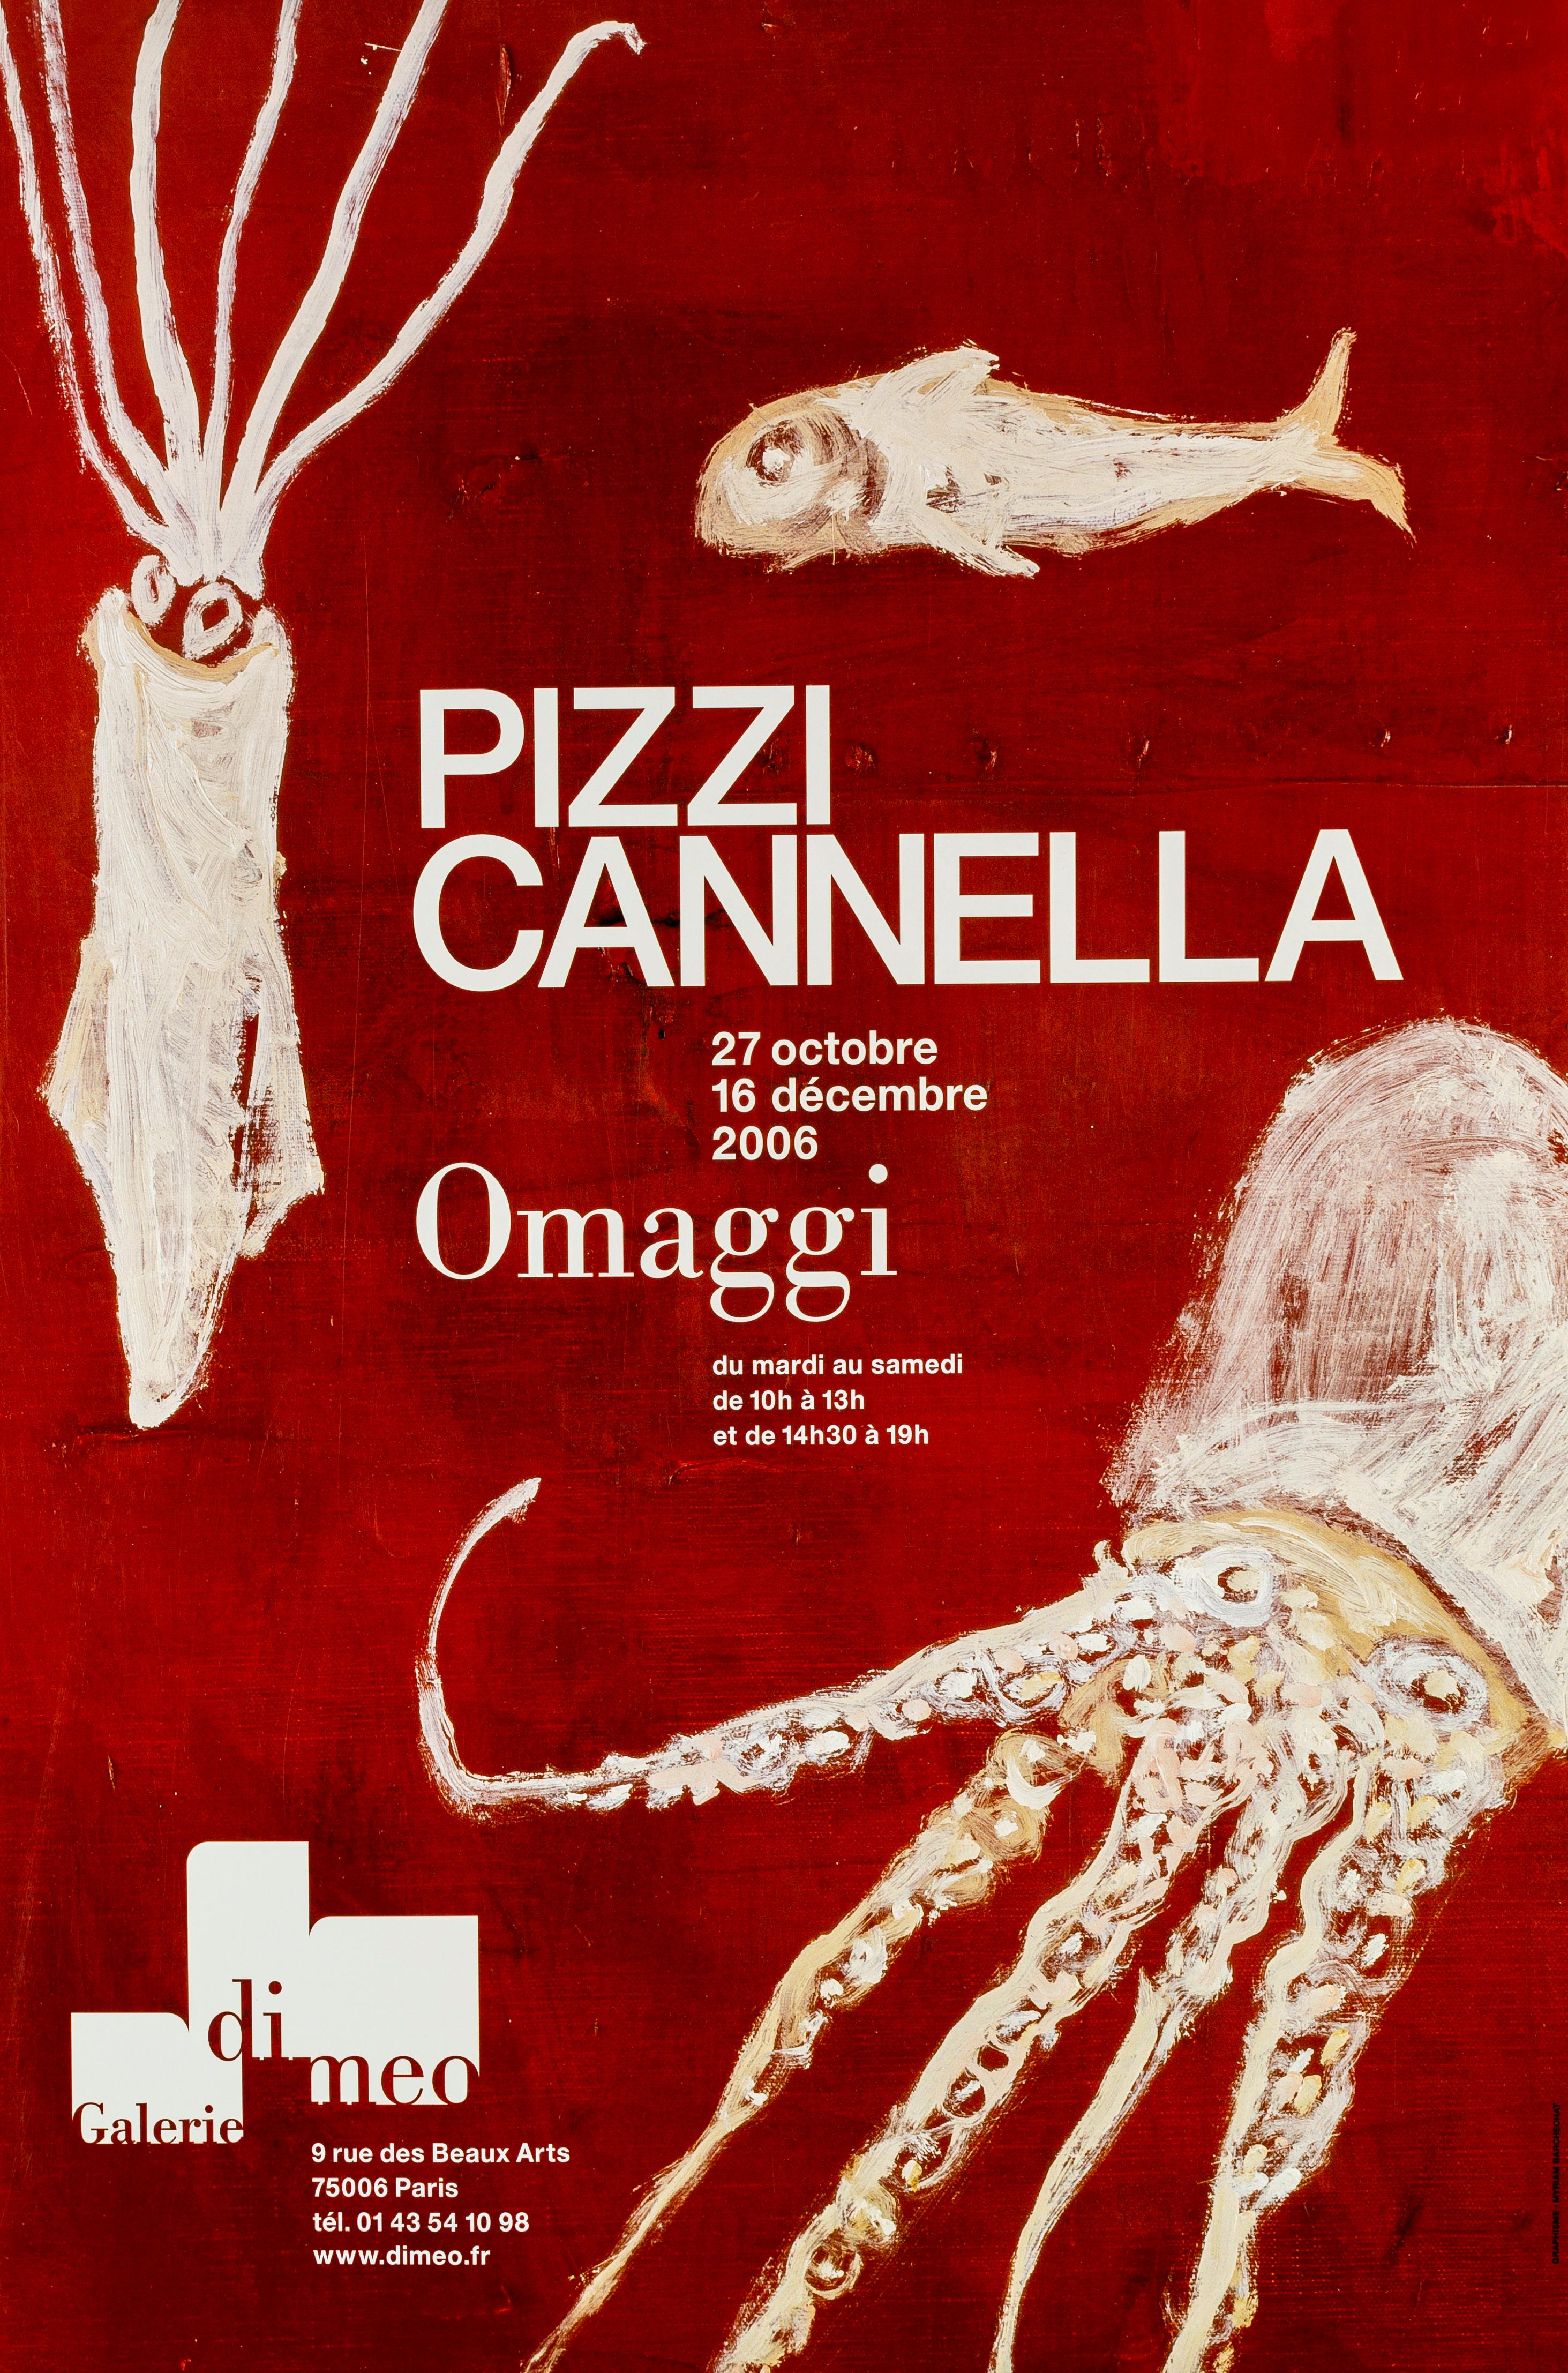 Piero Pizzi Cannella Print - Pizzi Cannella Exhibition Poster - 2006